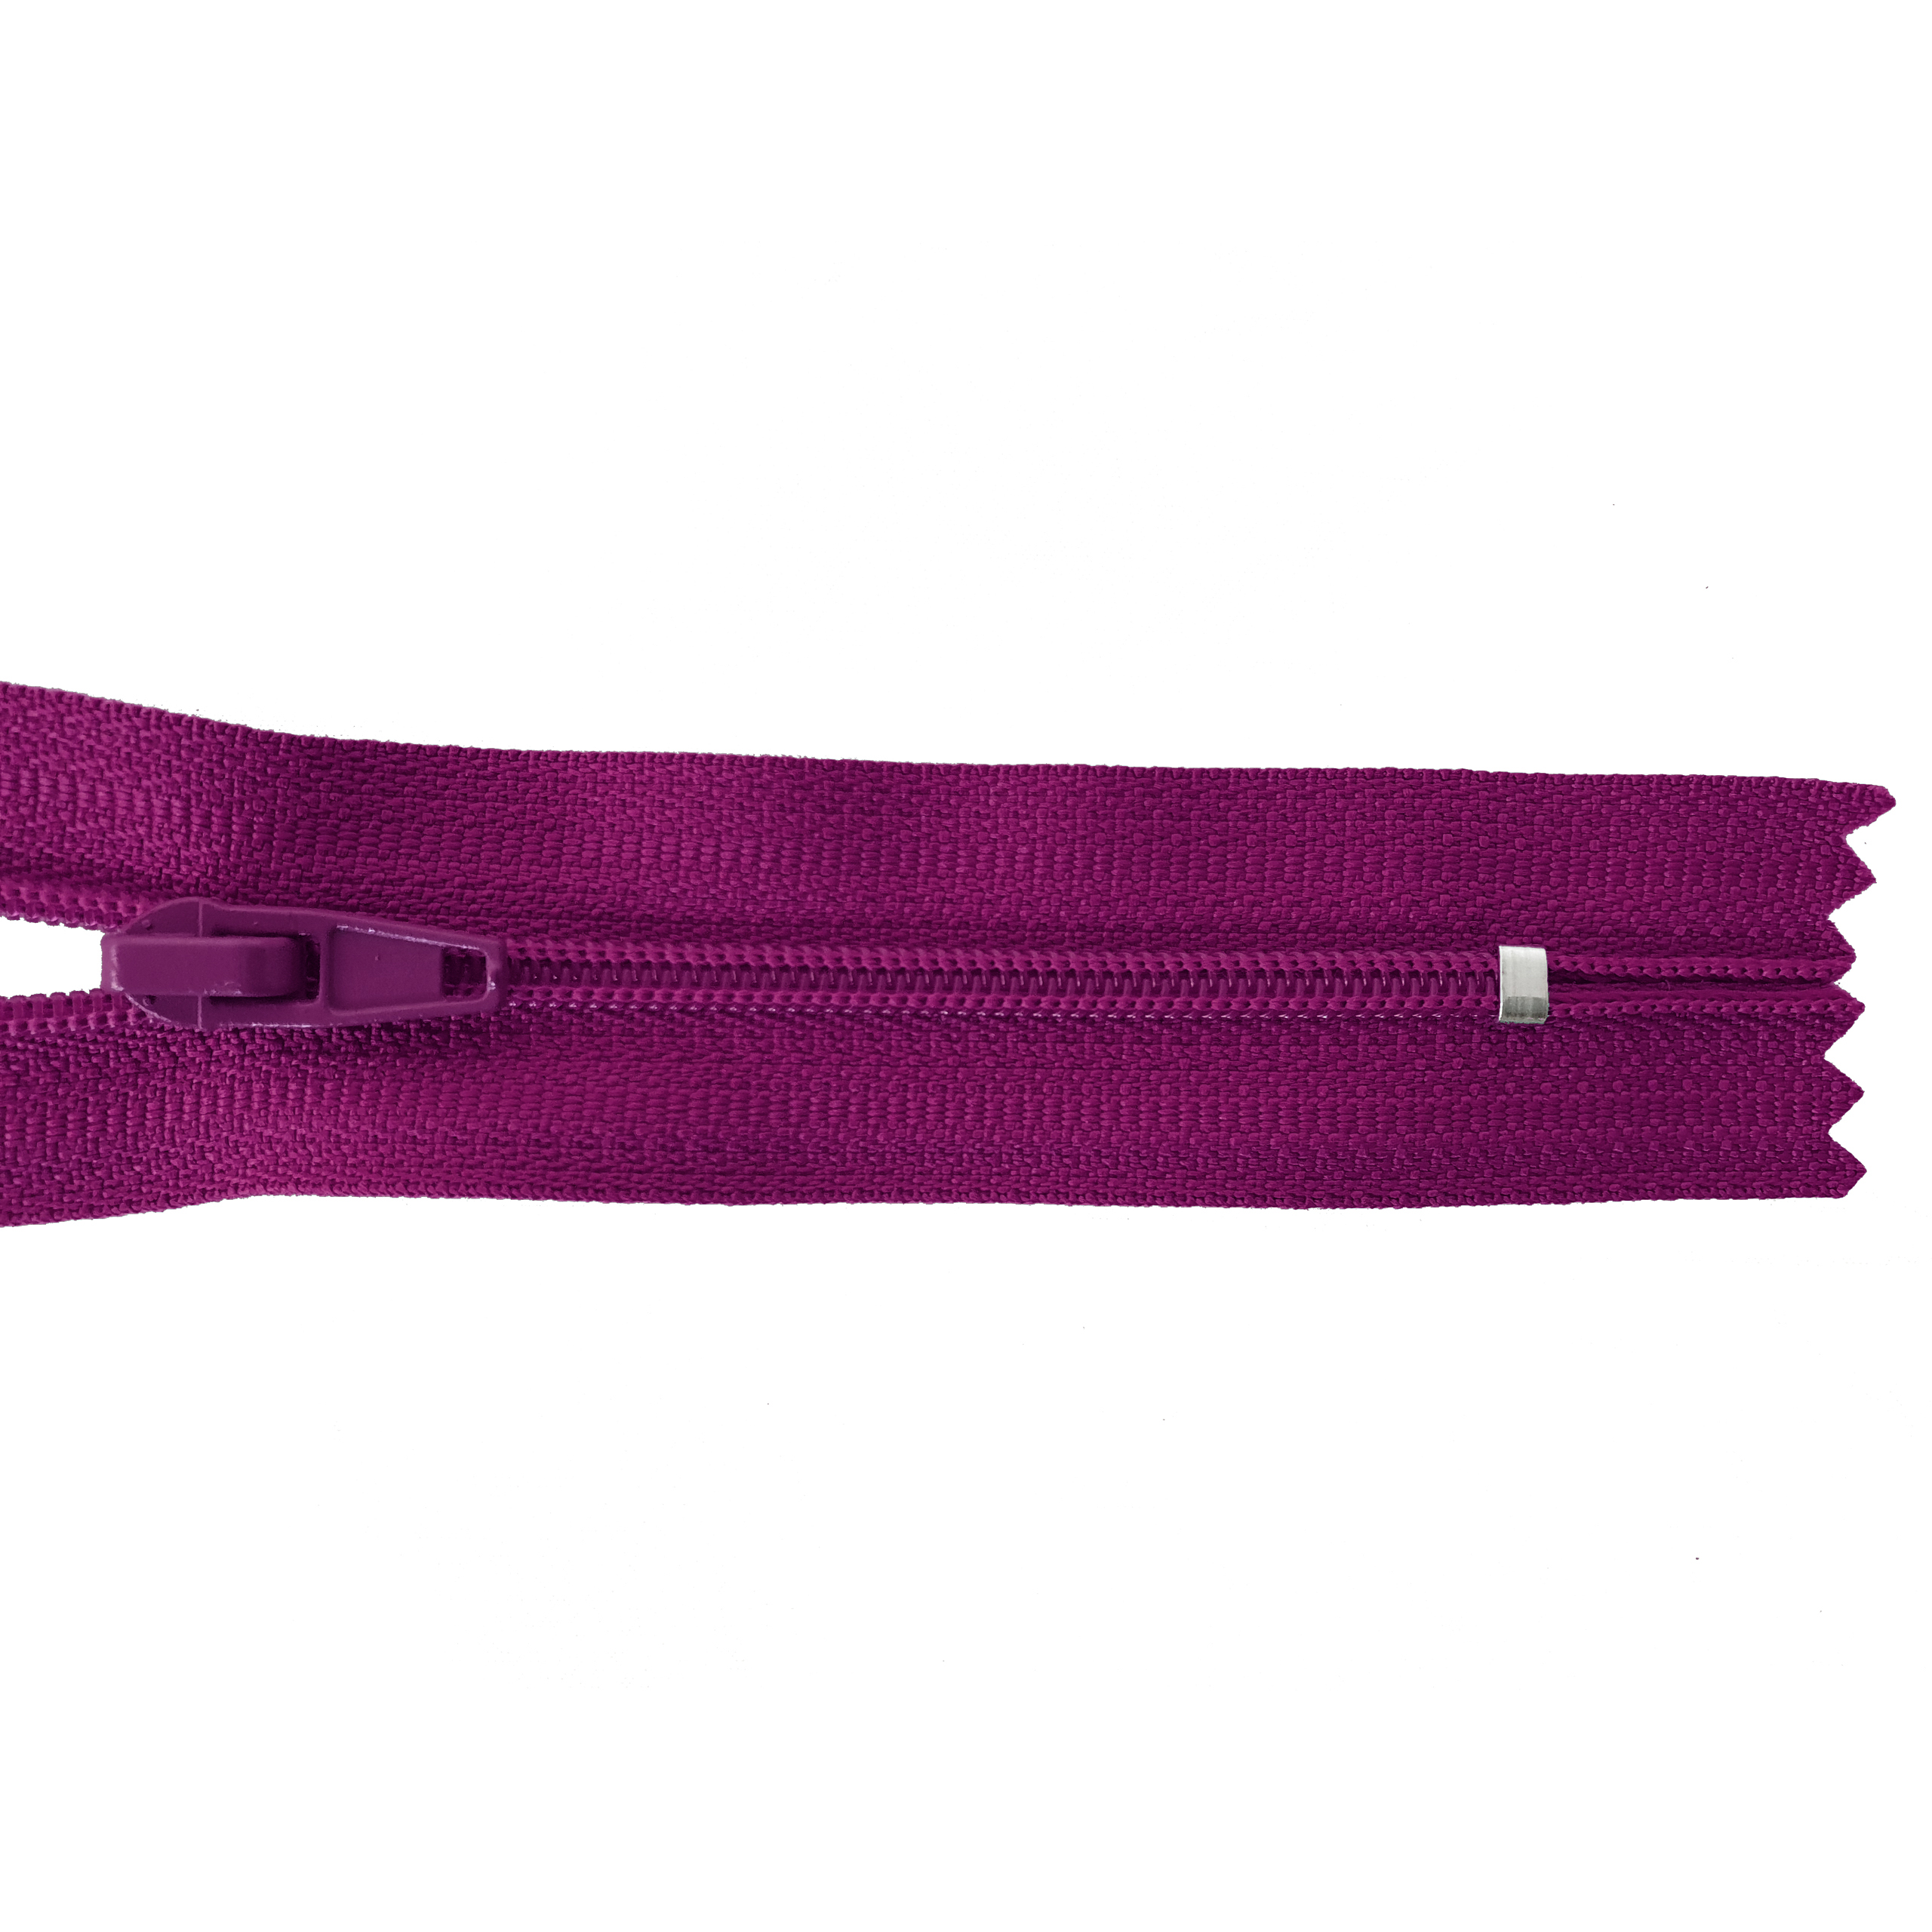 Reißverschluss 20cm, nicht teilbar, PES-Spirale fein, violett-purpur, hochwertiger Marken-Reißverschluss von Rubi/Barcelona